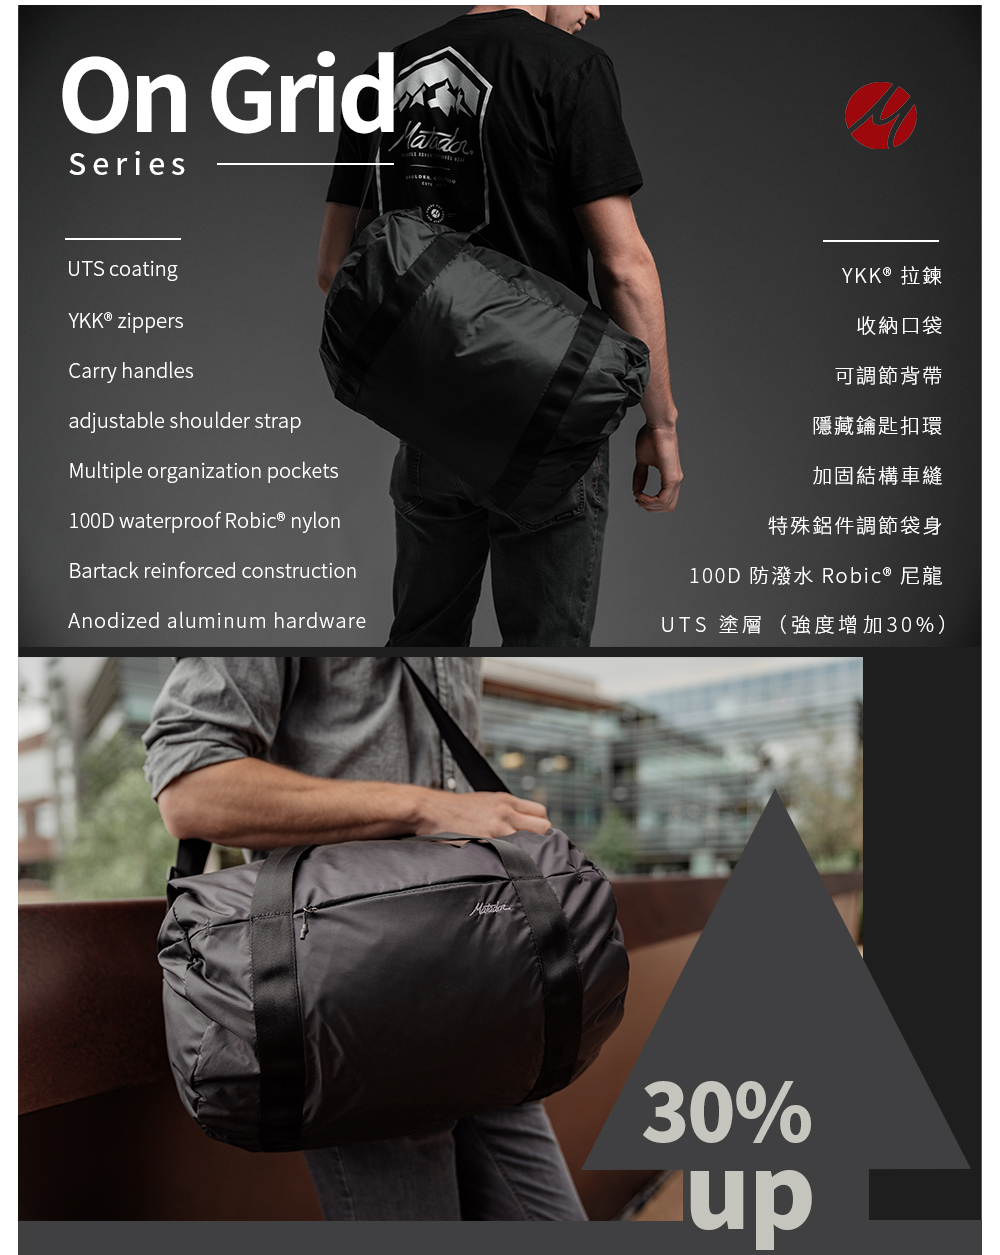 美國 Matador On-Grid 25L防潑水輕量旅行袋(黑色)